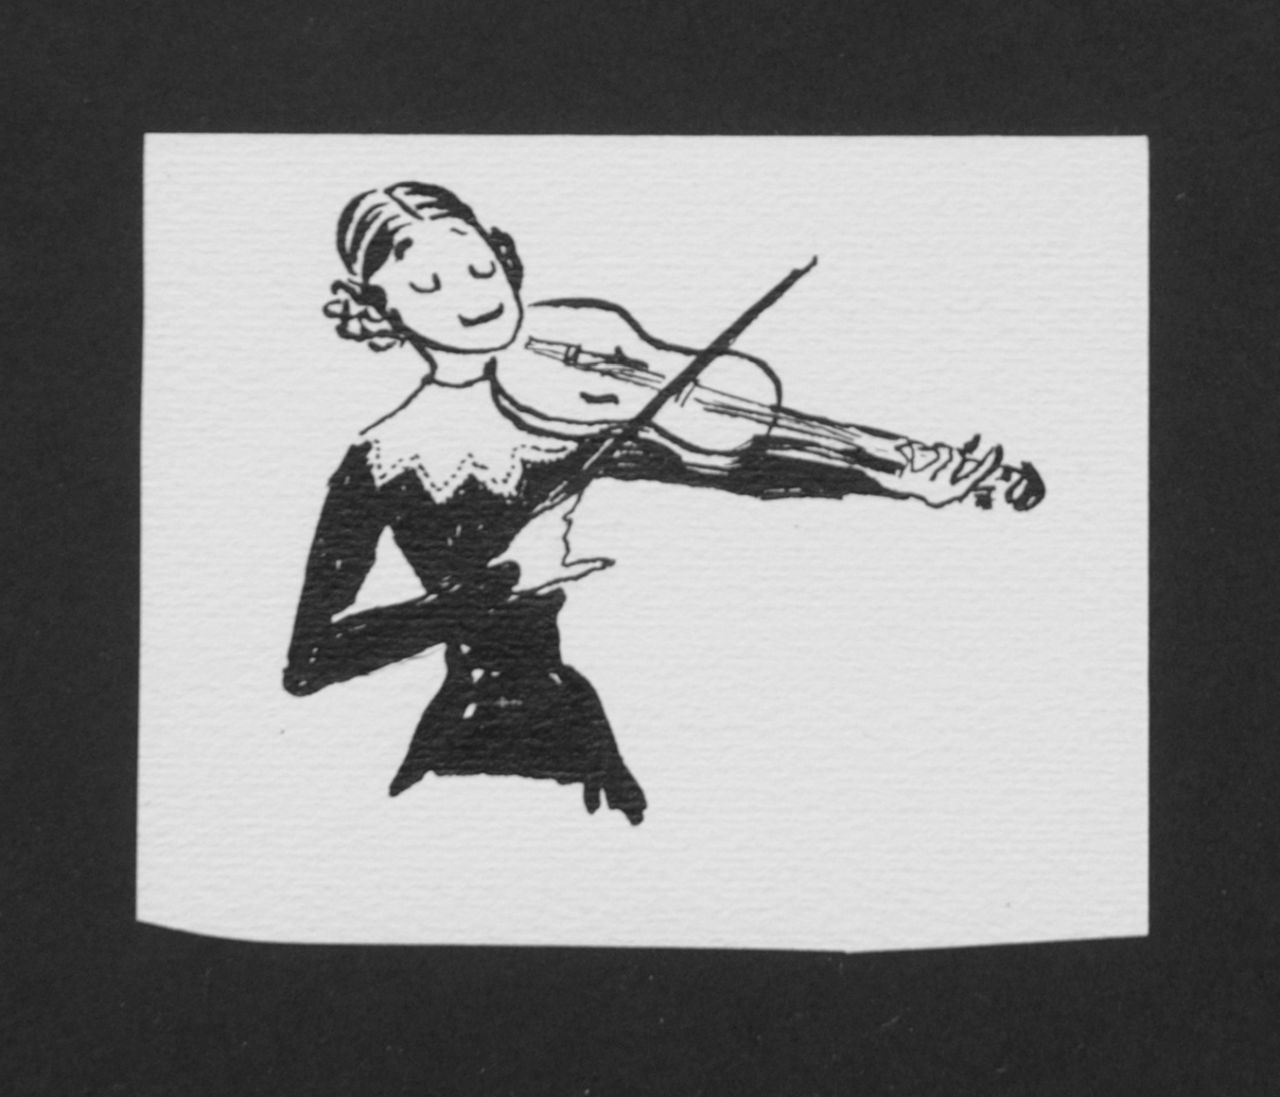 Oranje-Nassau (Prinses Beatrix) B.W.A. van | Beatrix Wilhelmina Armgard van Oranje-Nassau (Prinses Beatrix), Violinist, Bleistift und Ausziehtusche auf Papier 9,7 x 7,6 cm, executed August 1960